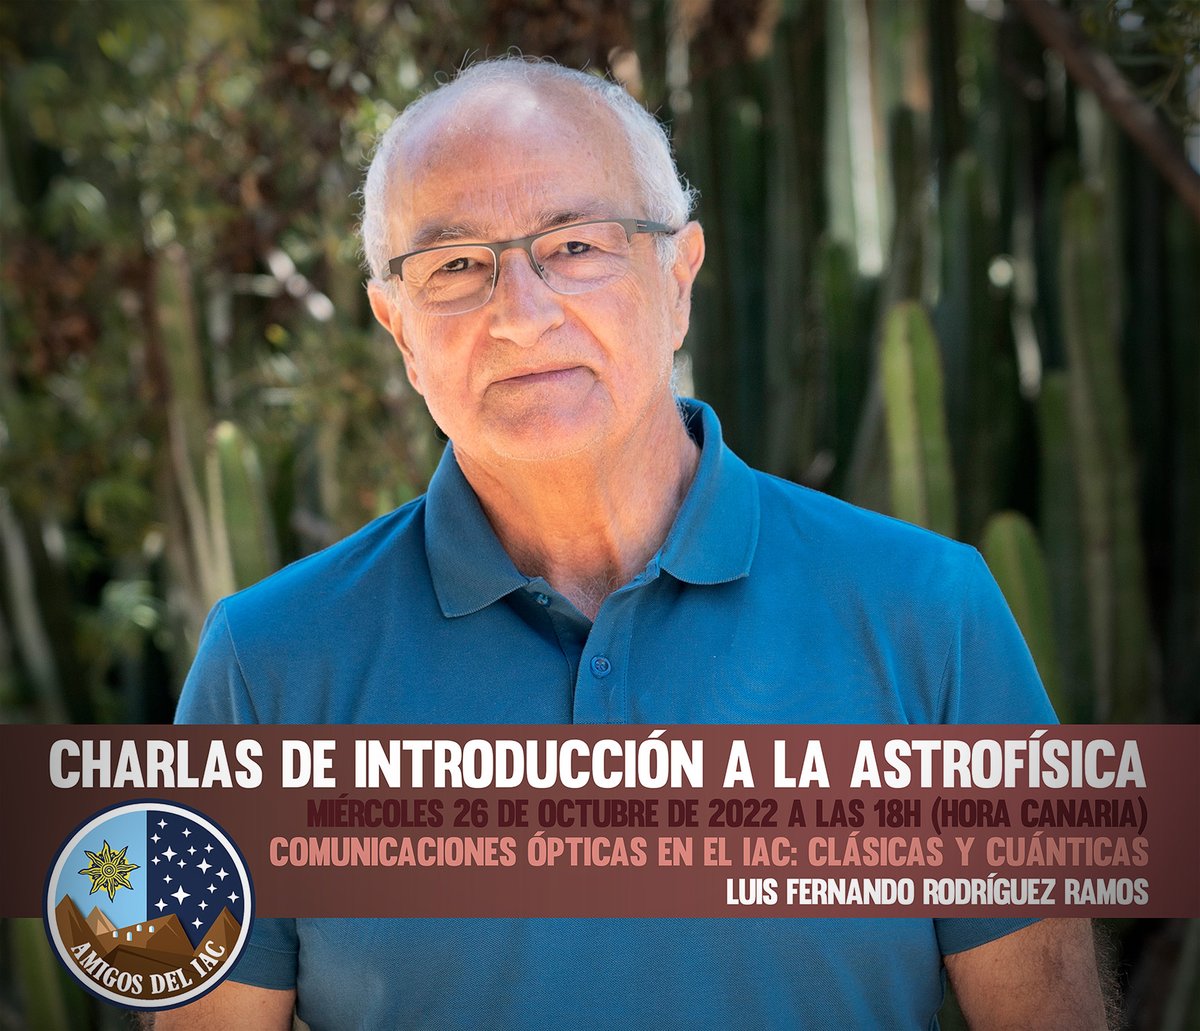 Mañana, a las 18:00h (hora local en Canarias), tendrá lugar la XII 'charla de Introducción a la Astrofísica”, que organiza el programa #AmigosdelIAC bajo el título “Comunicaciones ópticas en el IAC: Clásicas y cuánticas”, que impartirá el ingeniero del IAC Luis Fernando Rodríguez